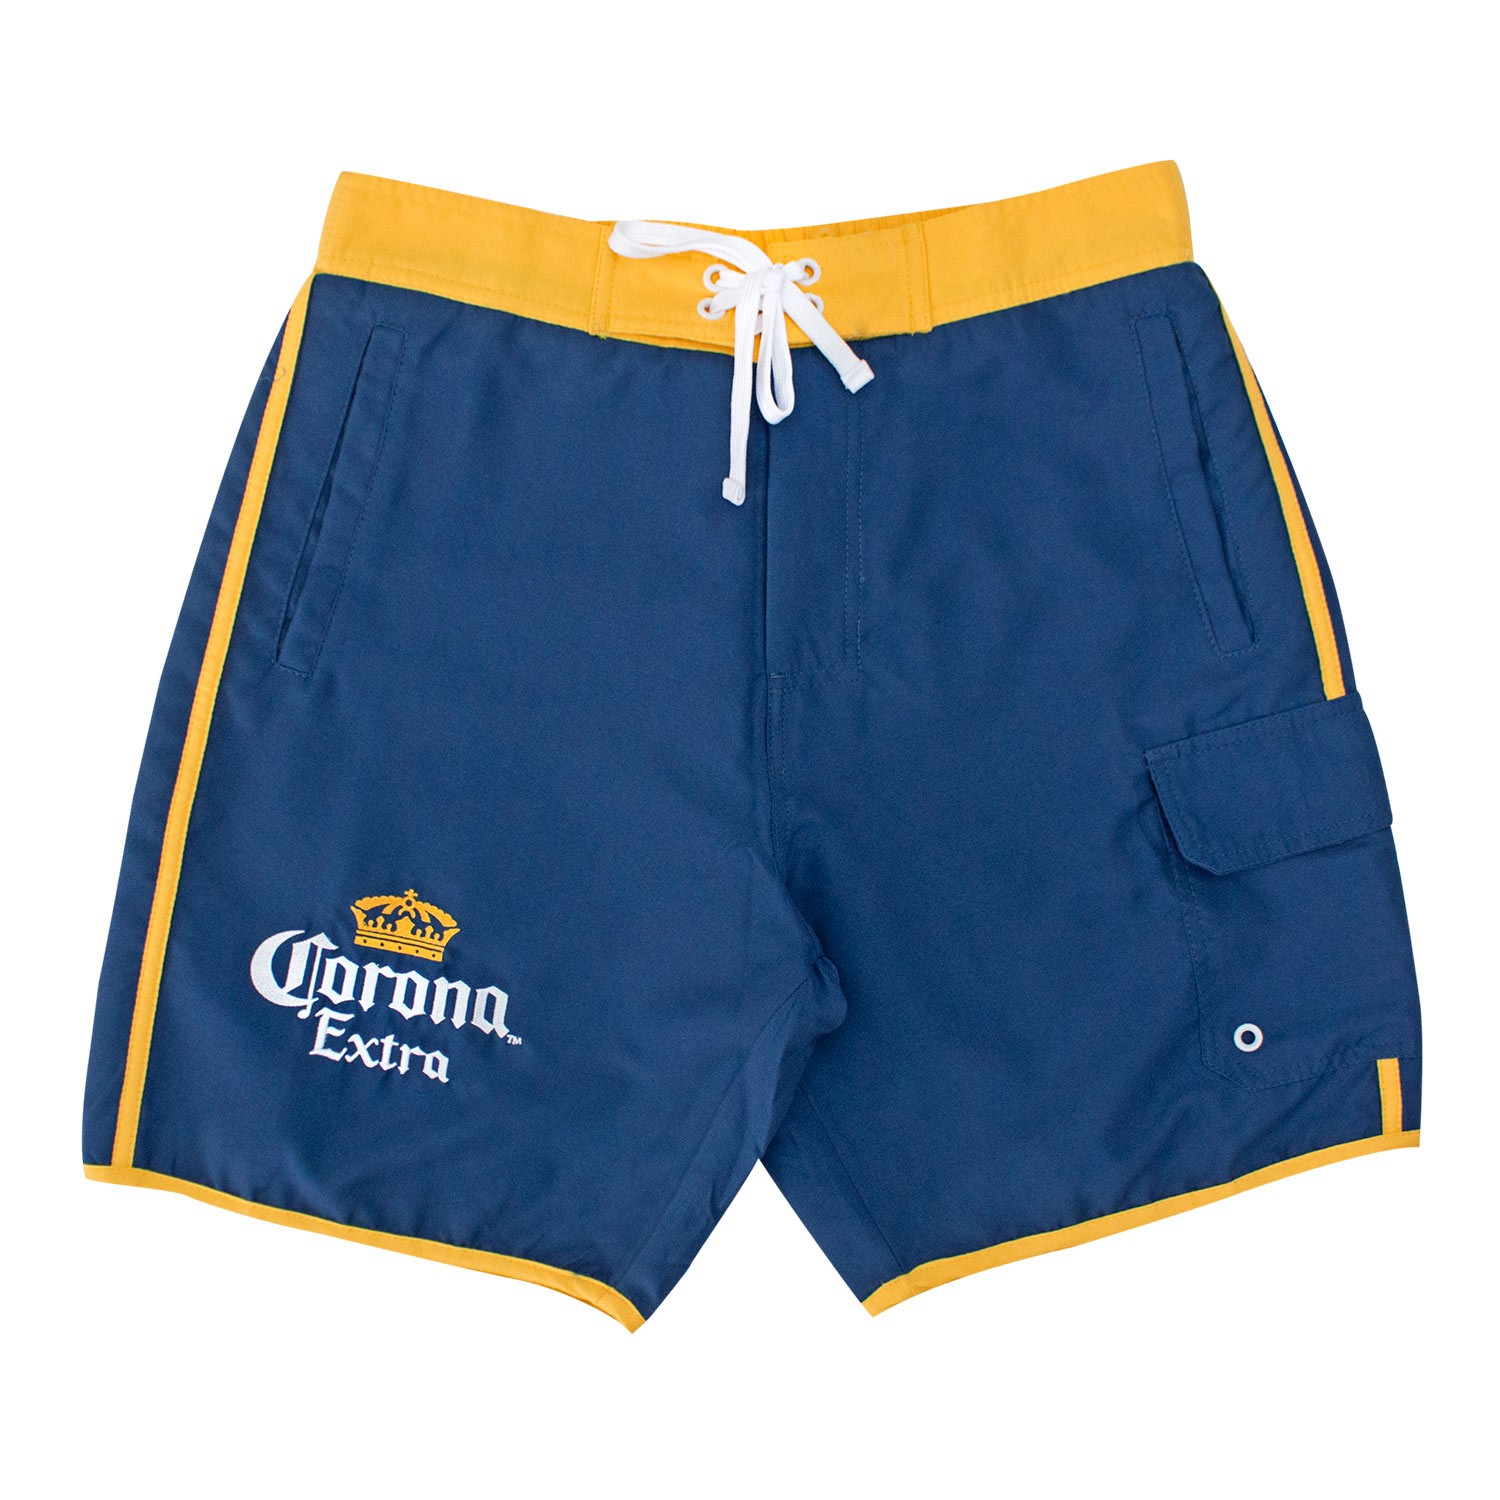 Corona Extra Gold Striped Board Shorts